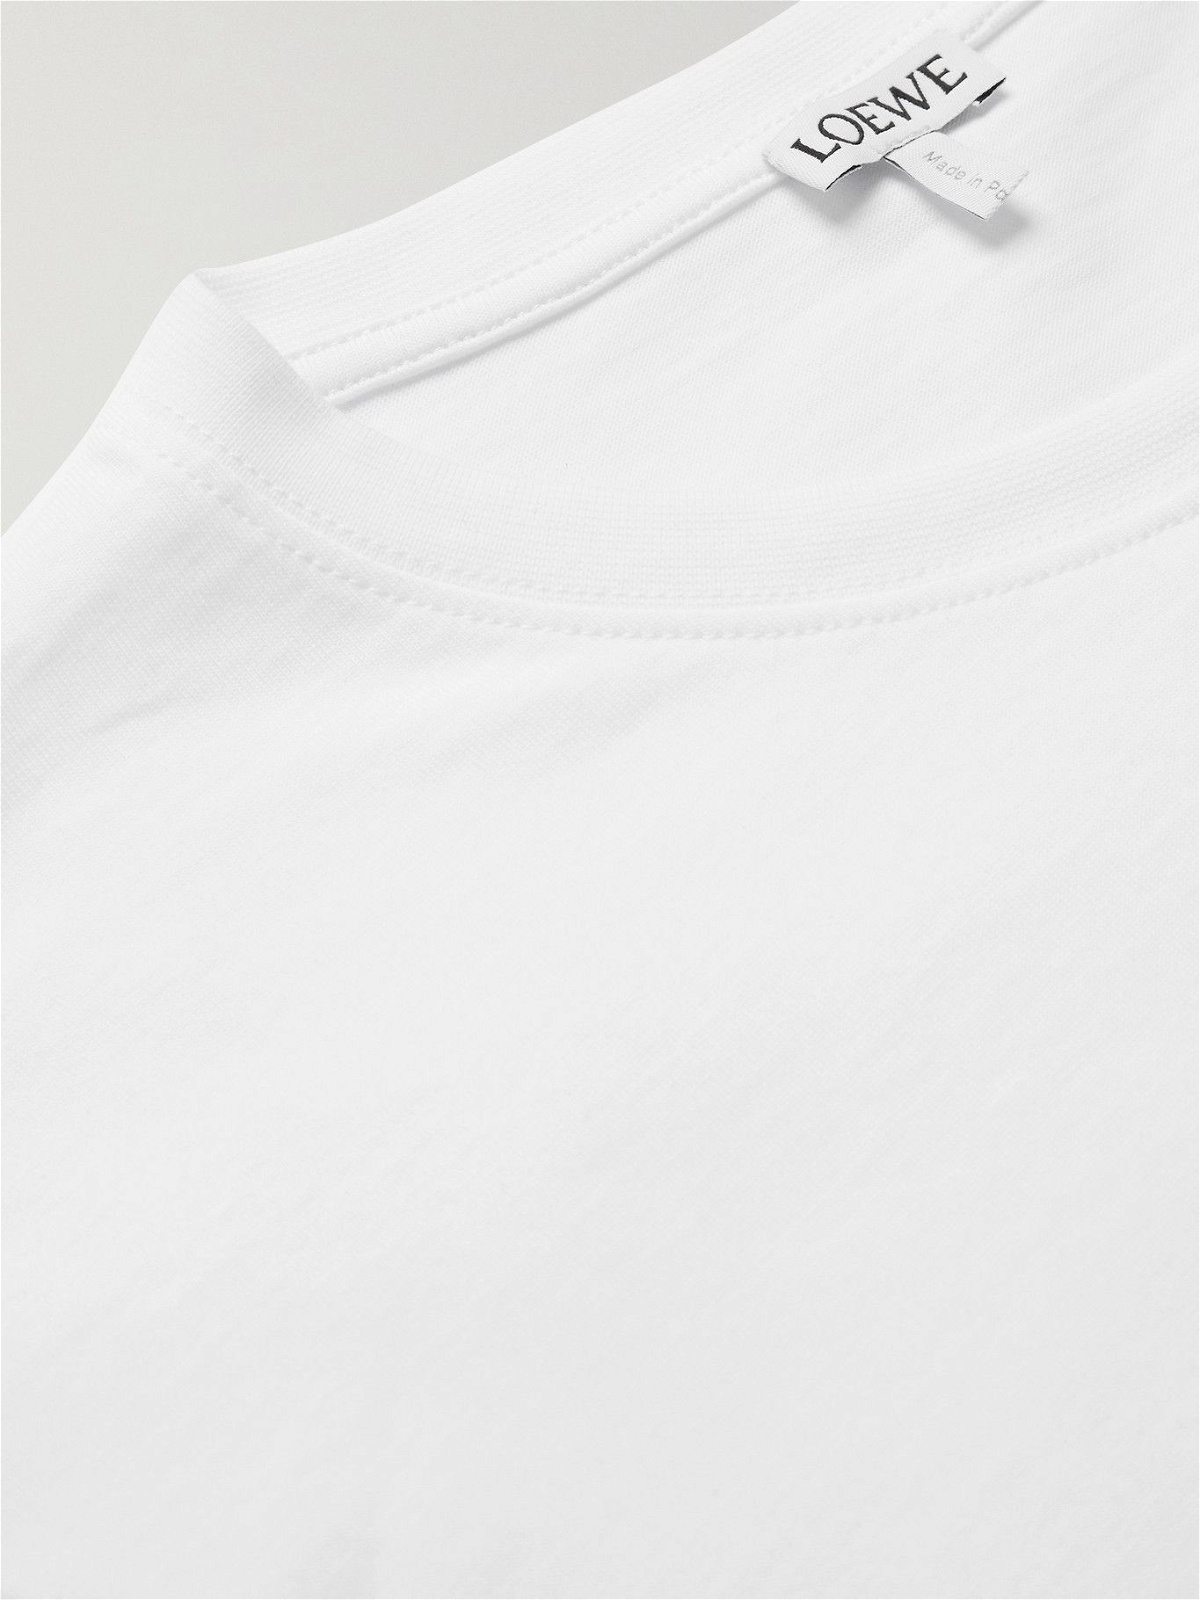 LOEWE - Logo-Embroidered Cotton-Jersey T-Shirt - White Loewe